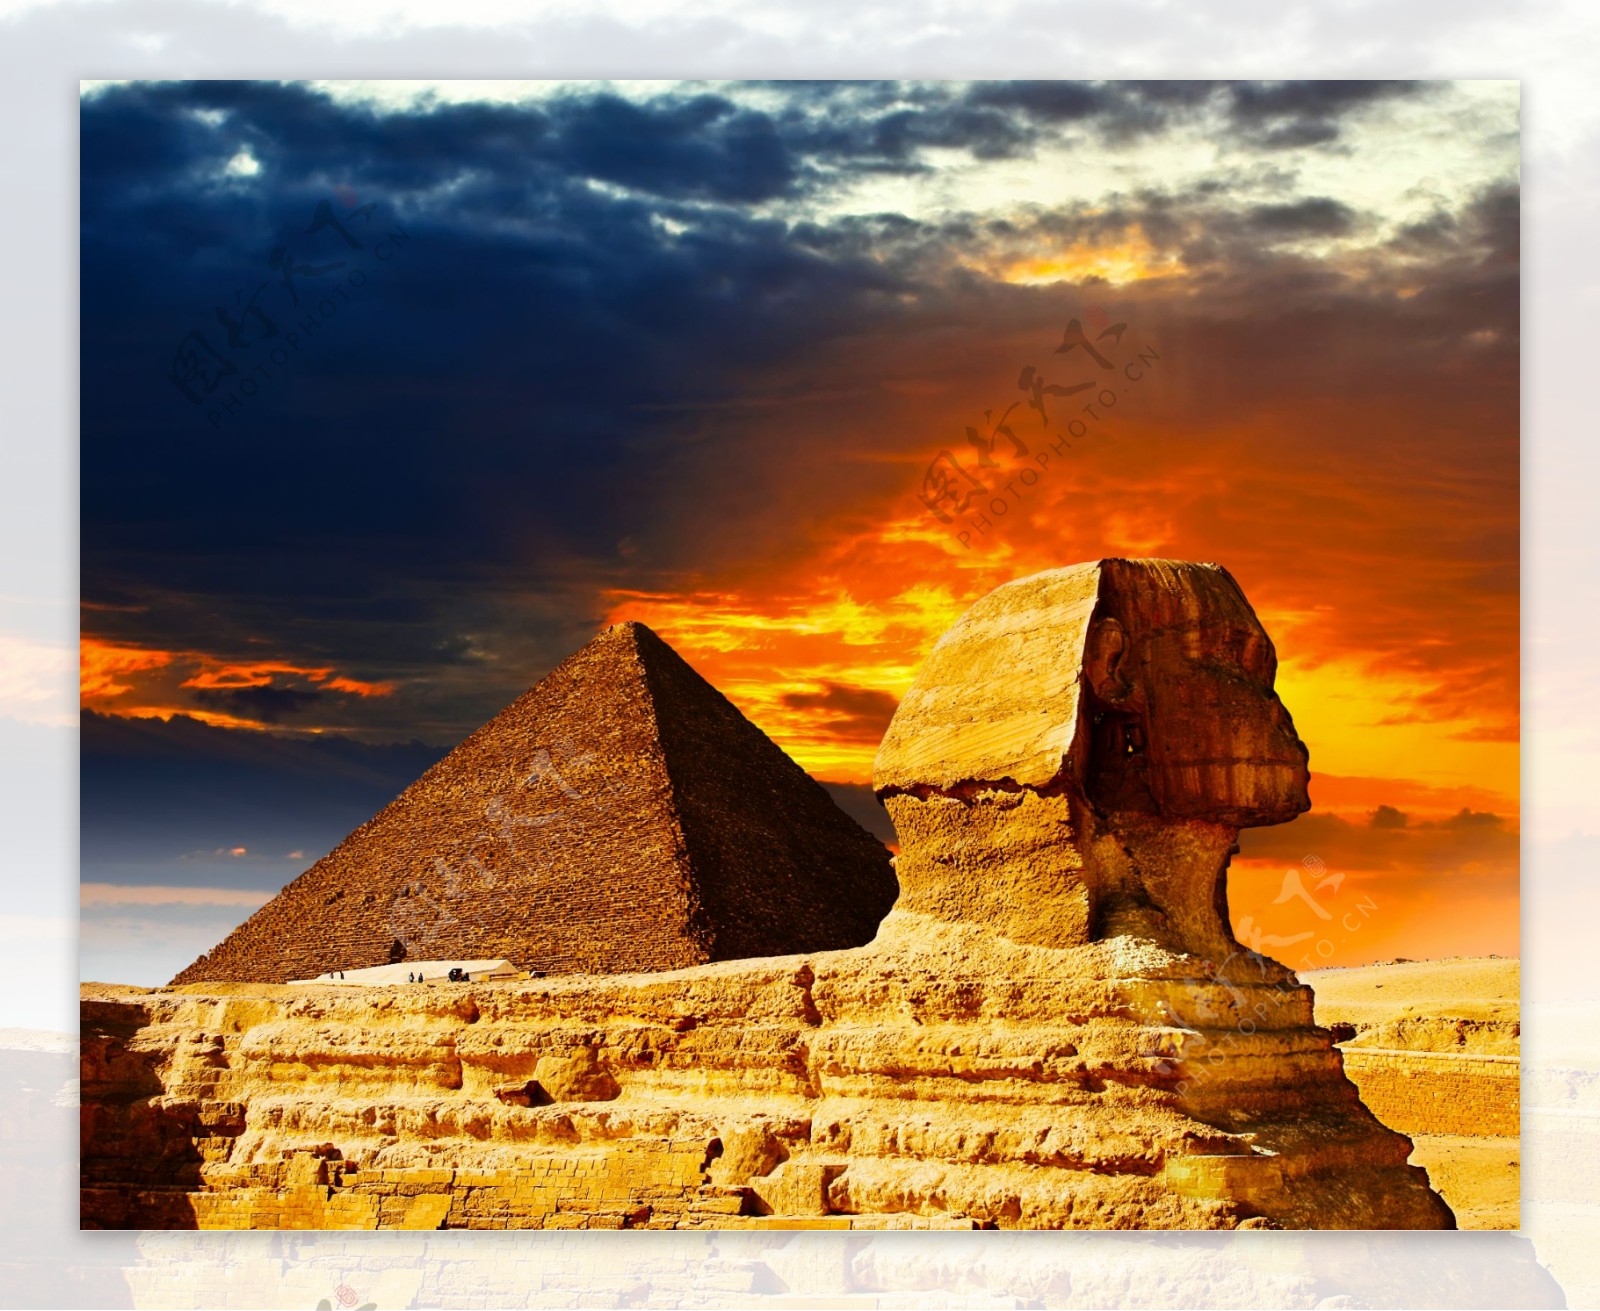 埃及狮身人面像金字塔图片